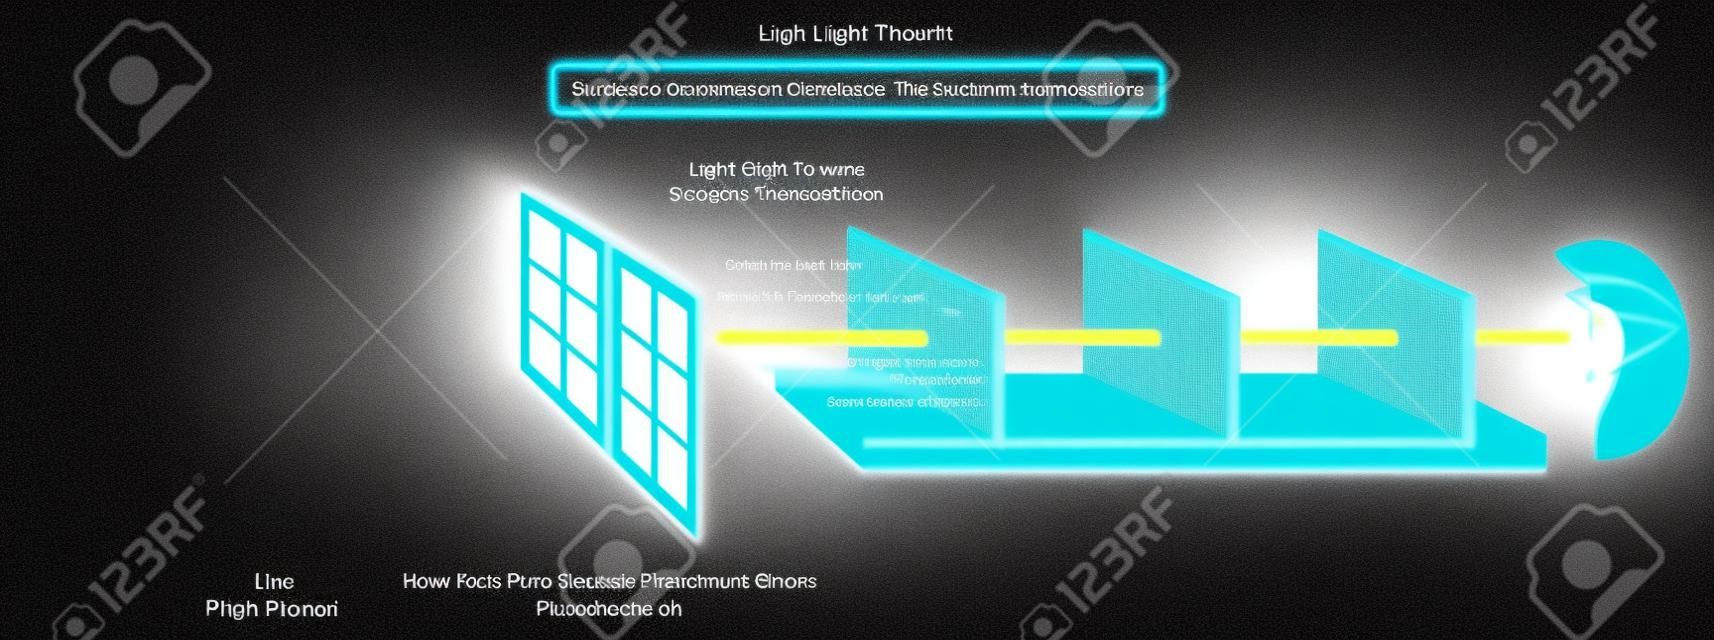 물리학 과학 교육을 위해 광원 태양과 광선이 투명한 물체 창 유리를 직선으로 통과하는 것을 보여주는 Light Travels 인포그래픽 다이어그램